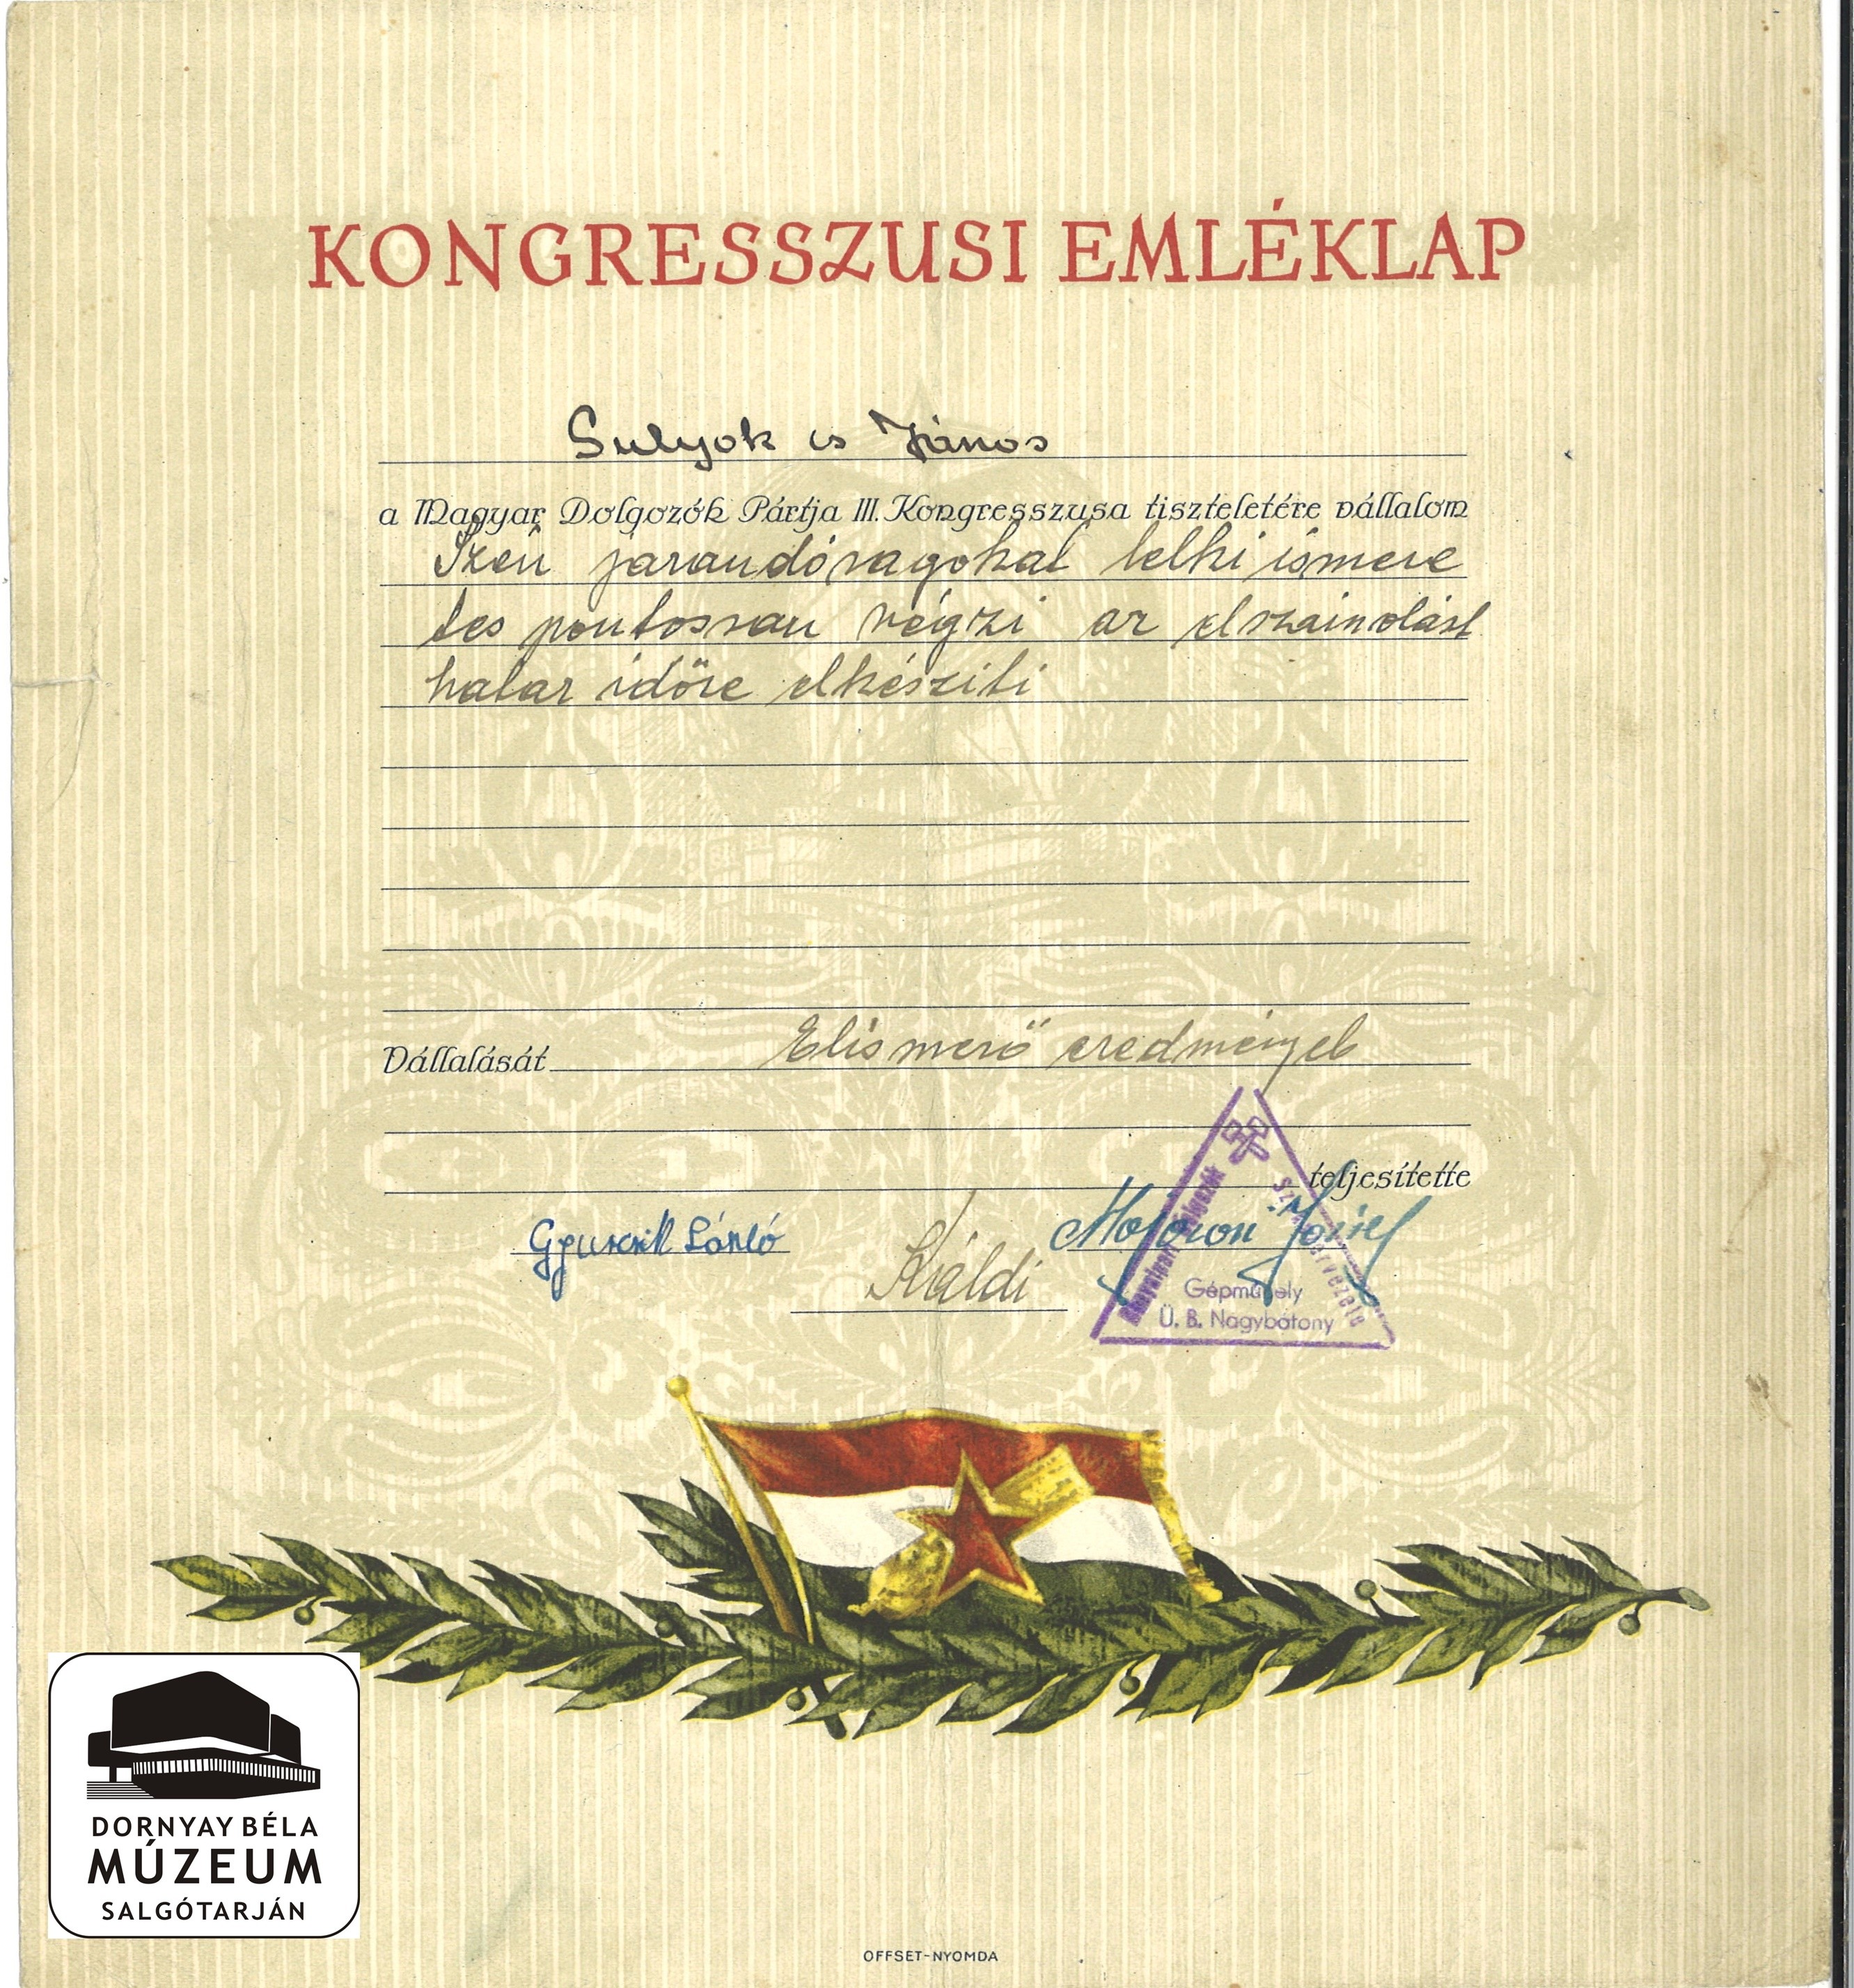 Sulyok János MDP III. Kongresszusra vállalás (Dornyay Béla Múzeum, Salgótarján CC BY-NC-SA)